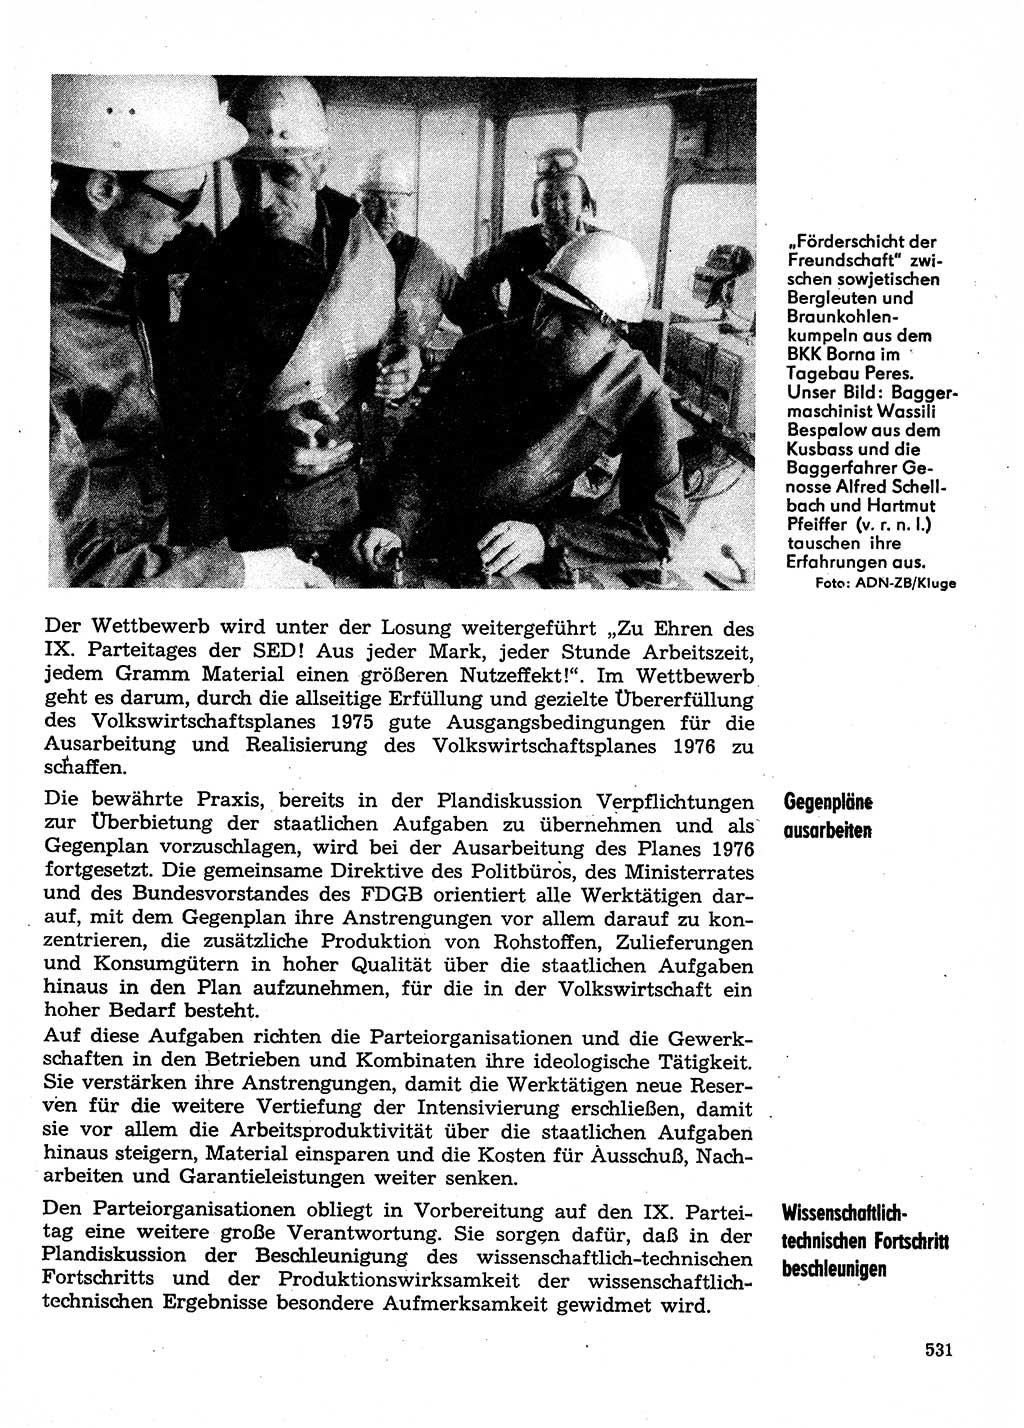 Neuer Weg (NW), Organ des Zentralkomitees (ZK) der SED (Sozialistische Einheitspartei Deutschlands) für Fragen des Parteilebens, 30. Jahrgang [Deutsche Demokratische Republik (DDR)] 1975, Seite 531 (NW ZK SED DDR 1975, S. 531)